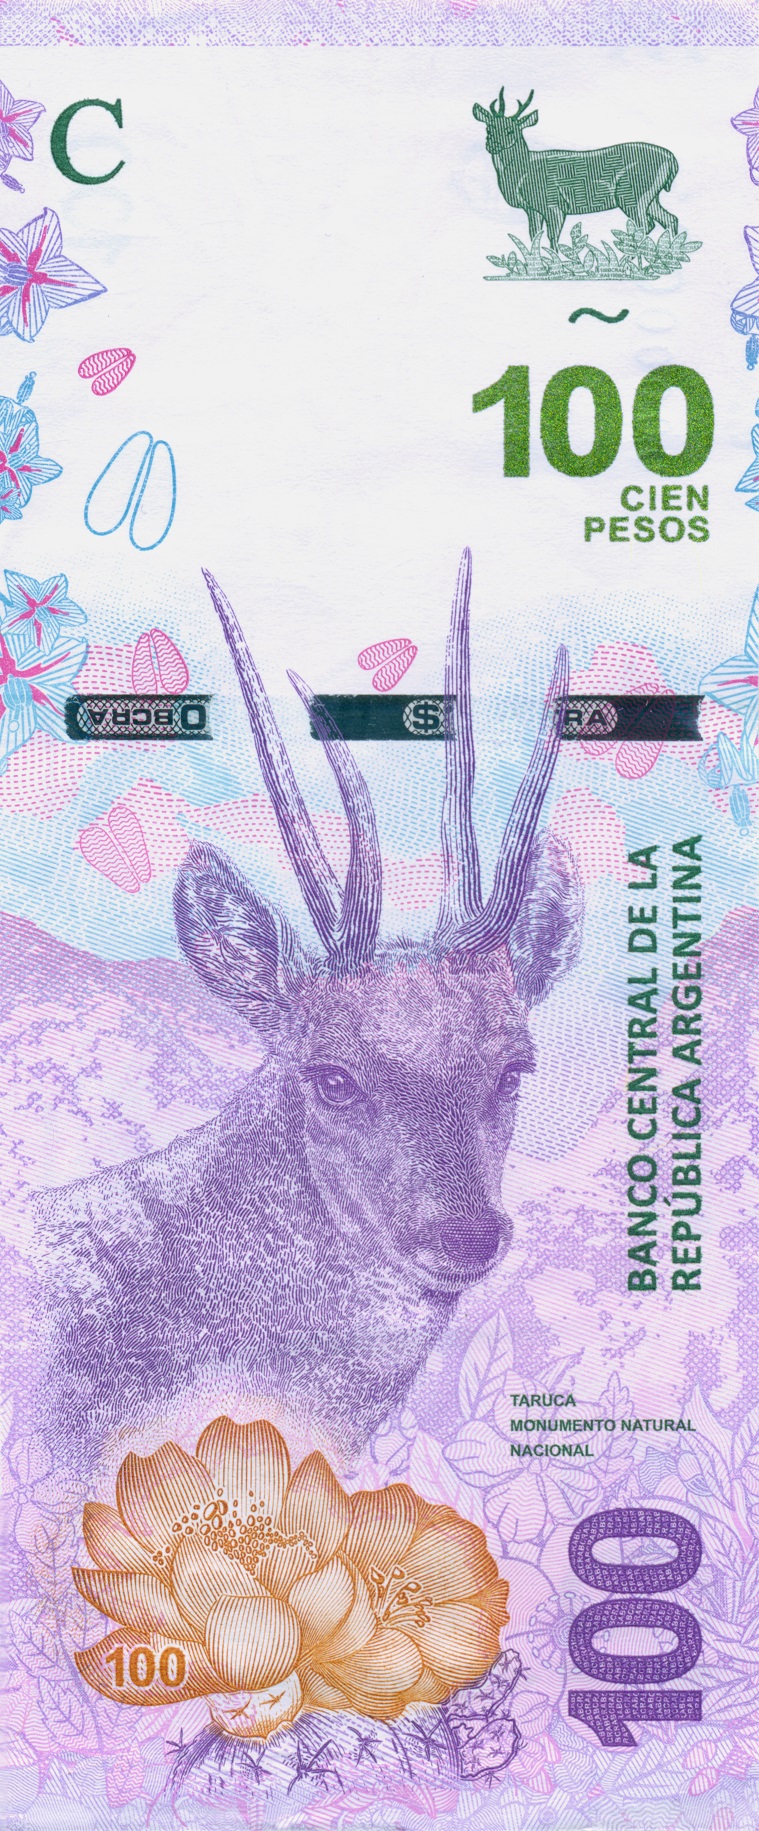 imagen en miniatura del billete de 100 pesos